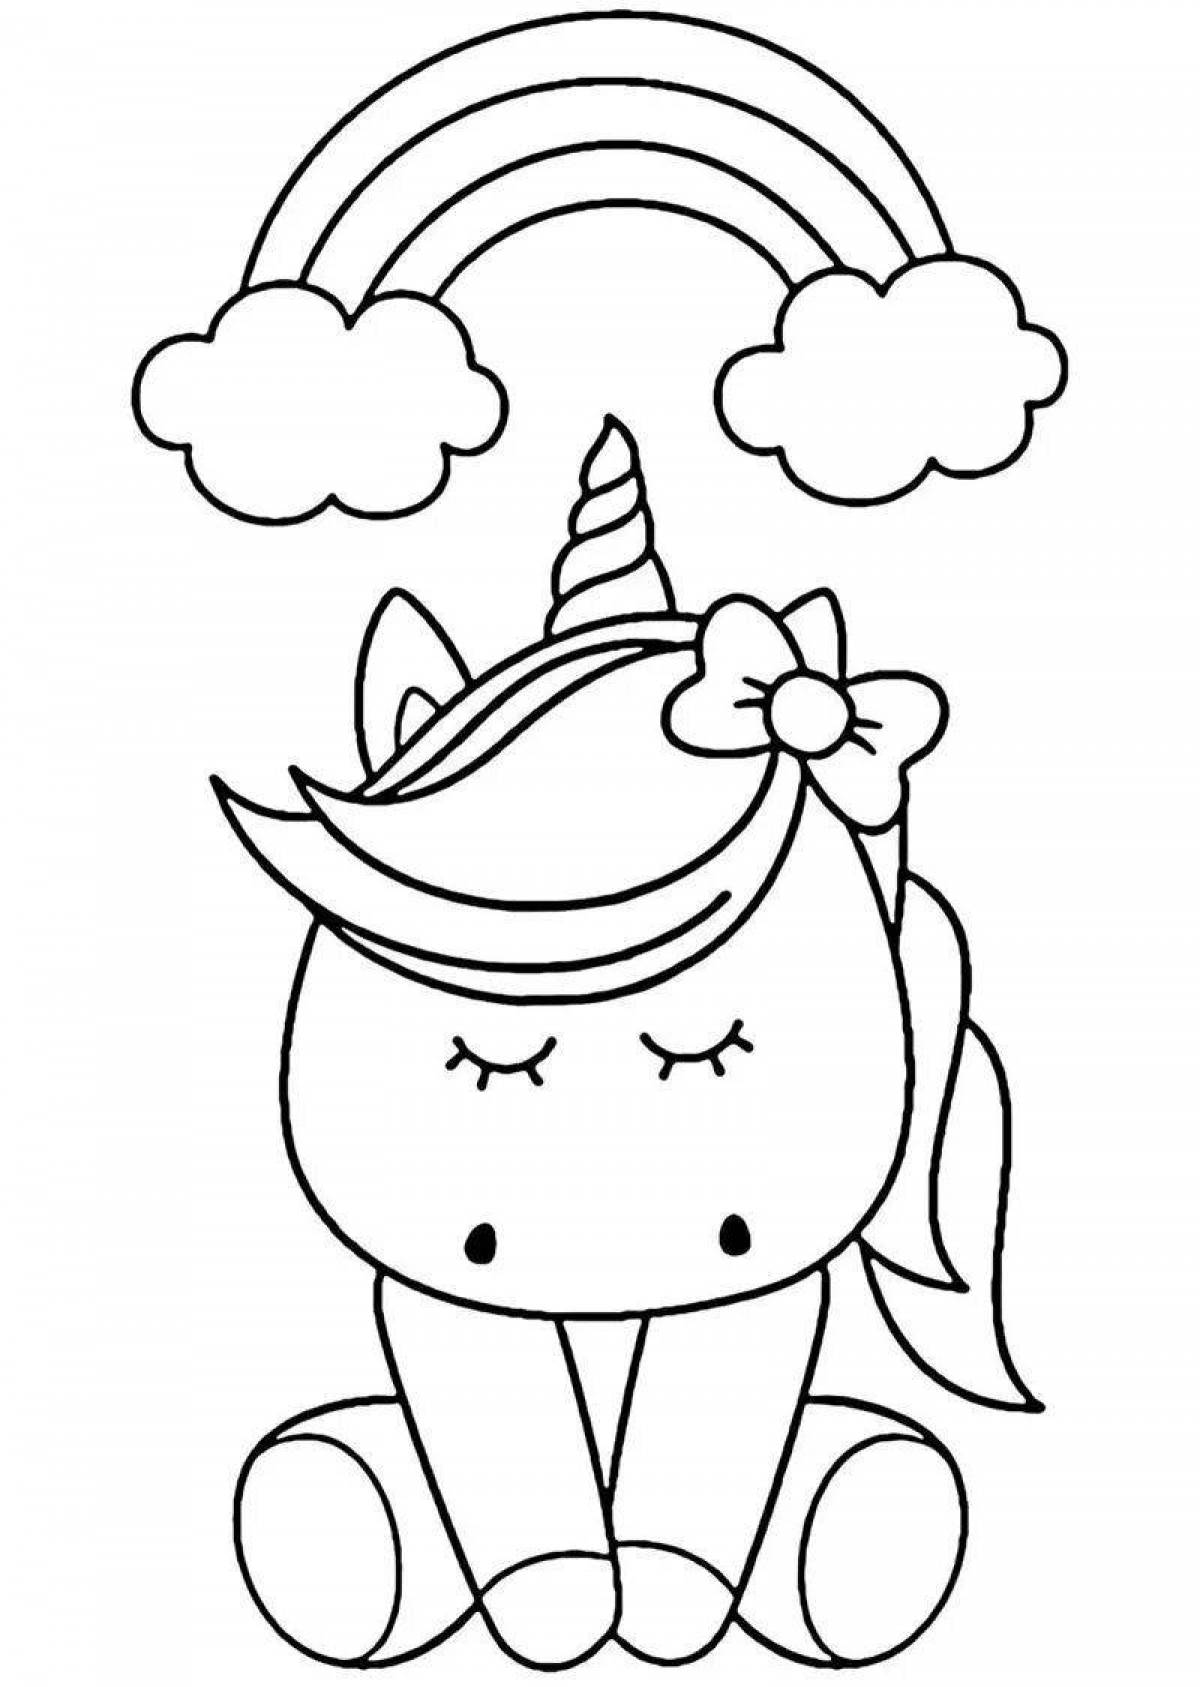 Cute cute unicorn coloring book for kids